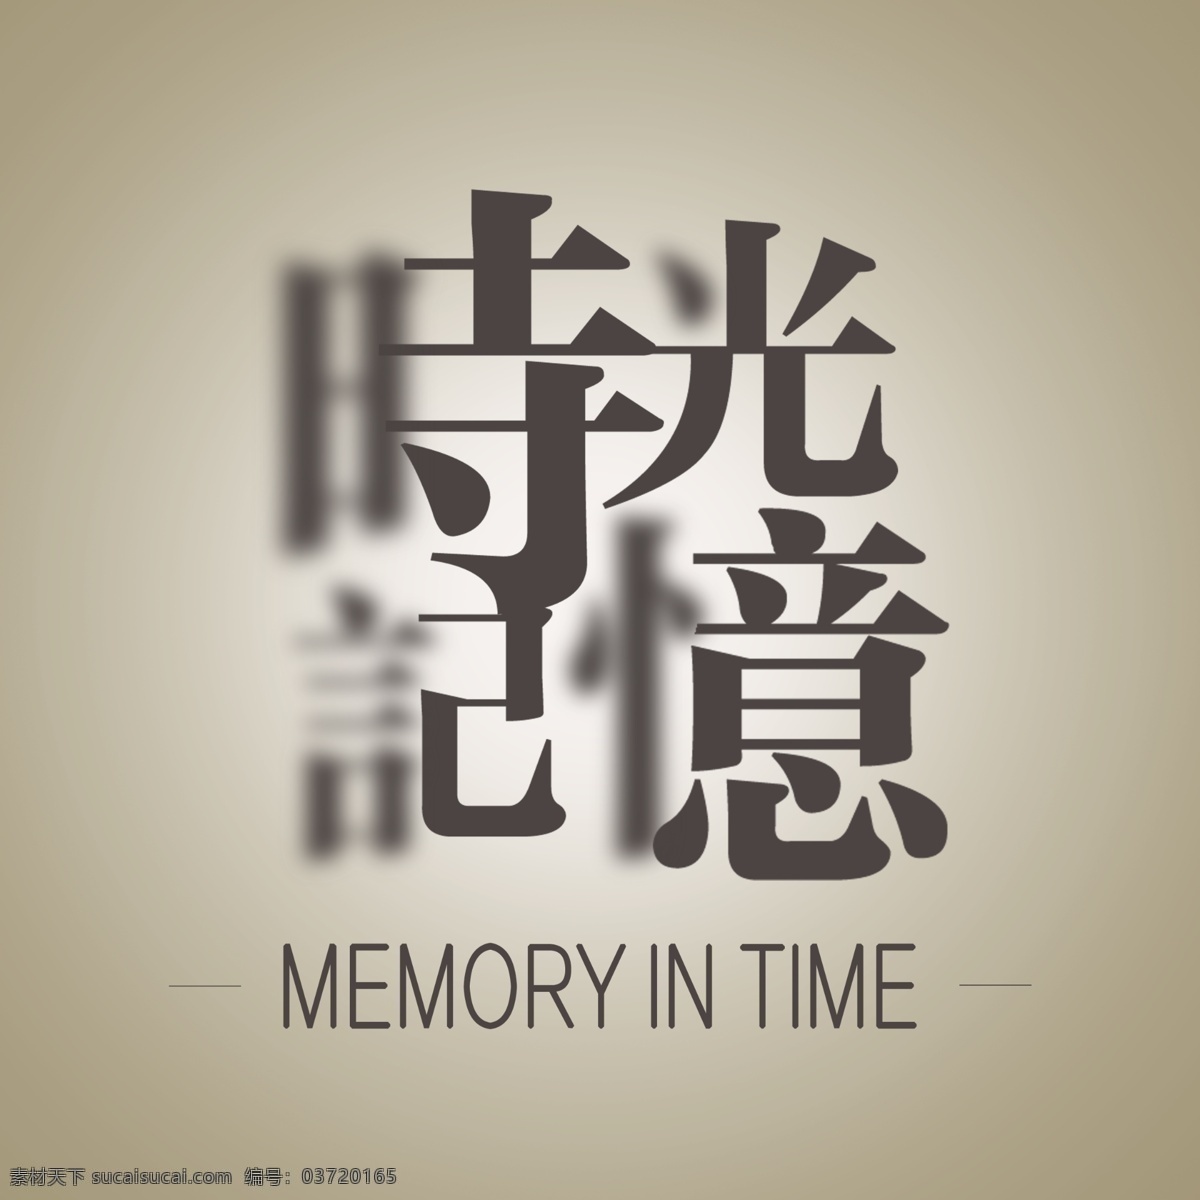 时光记忆 字体 相册 封面 图案素材 时光 记忆 文化艺术